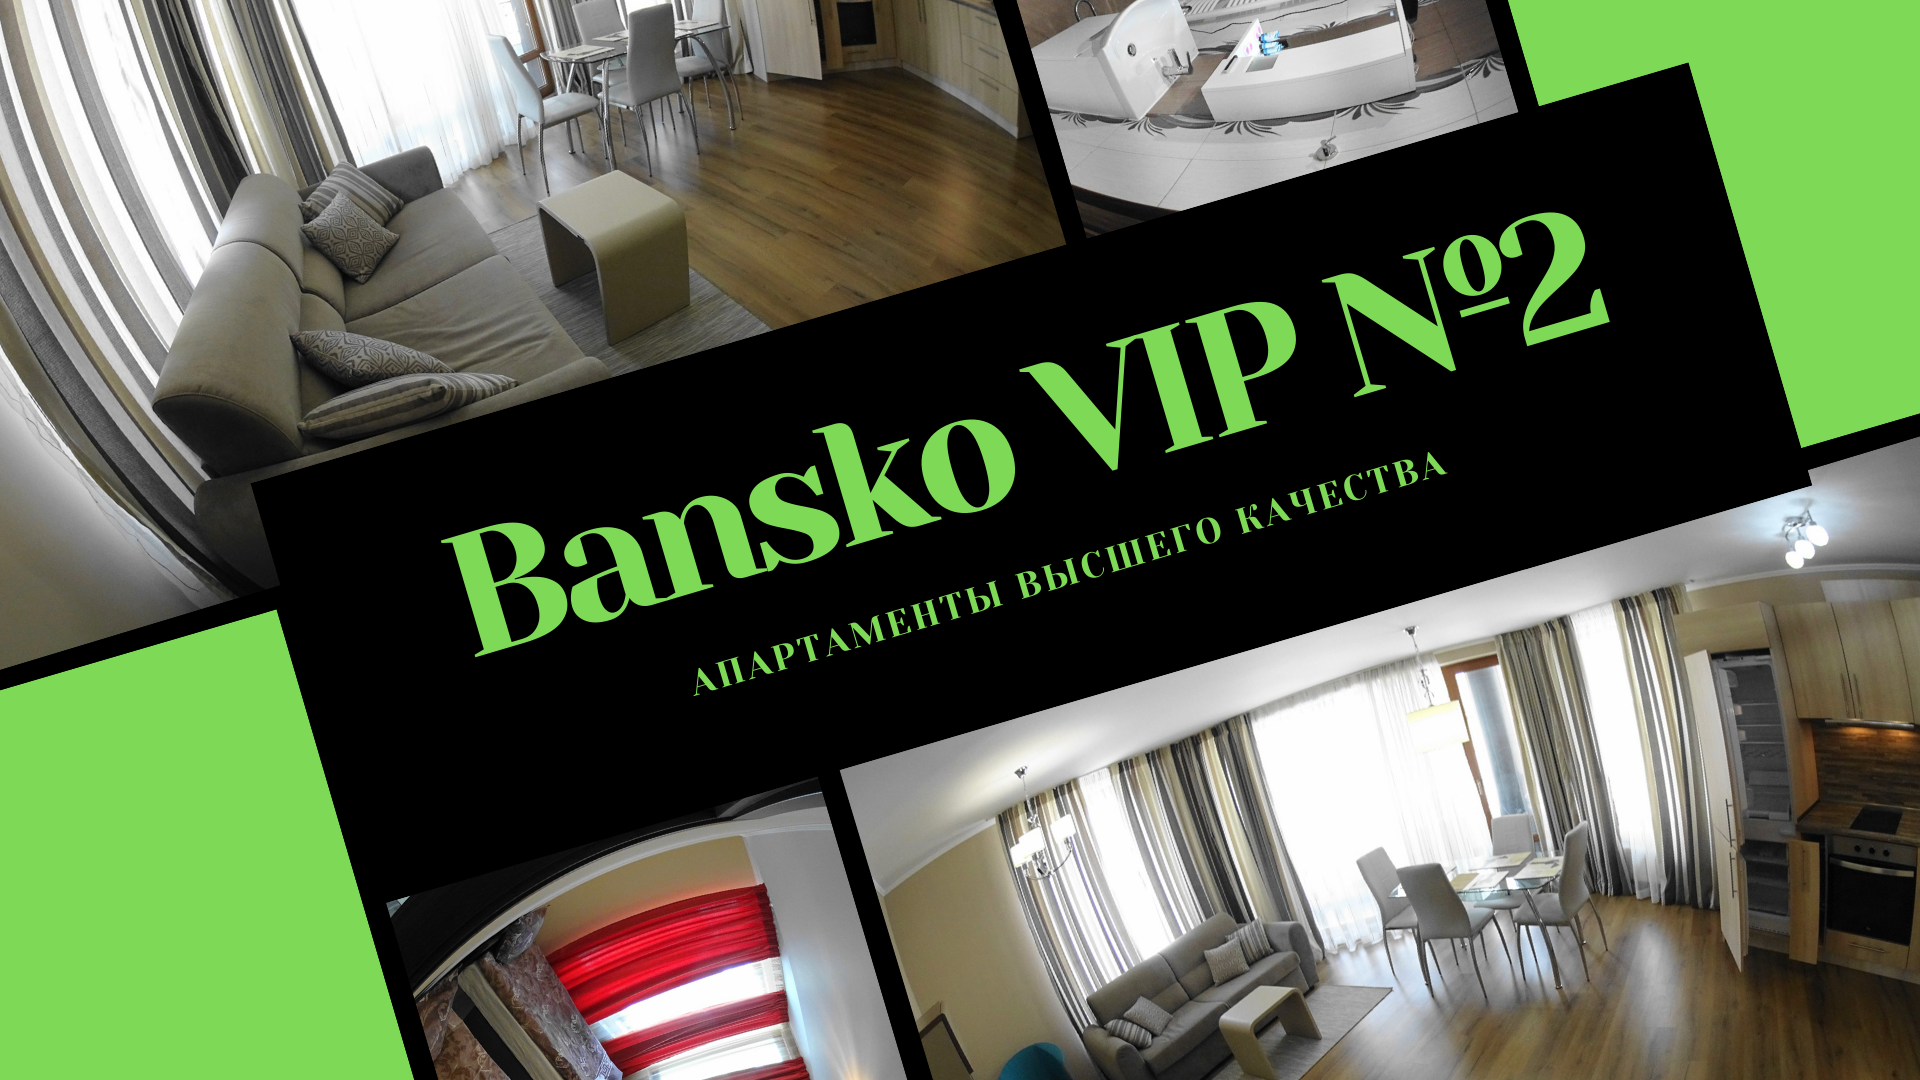 2 bedroom VIP apartment Bansko Bulgaria